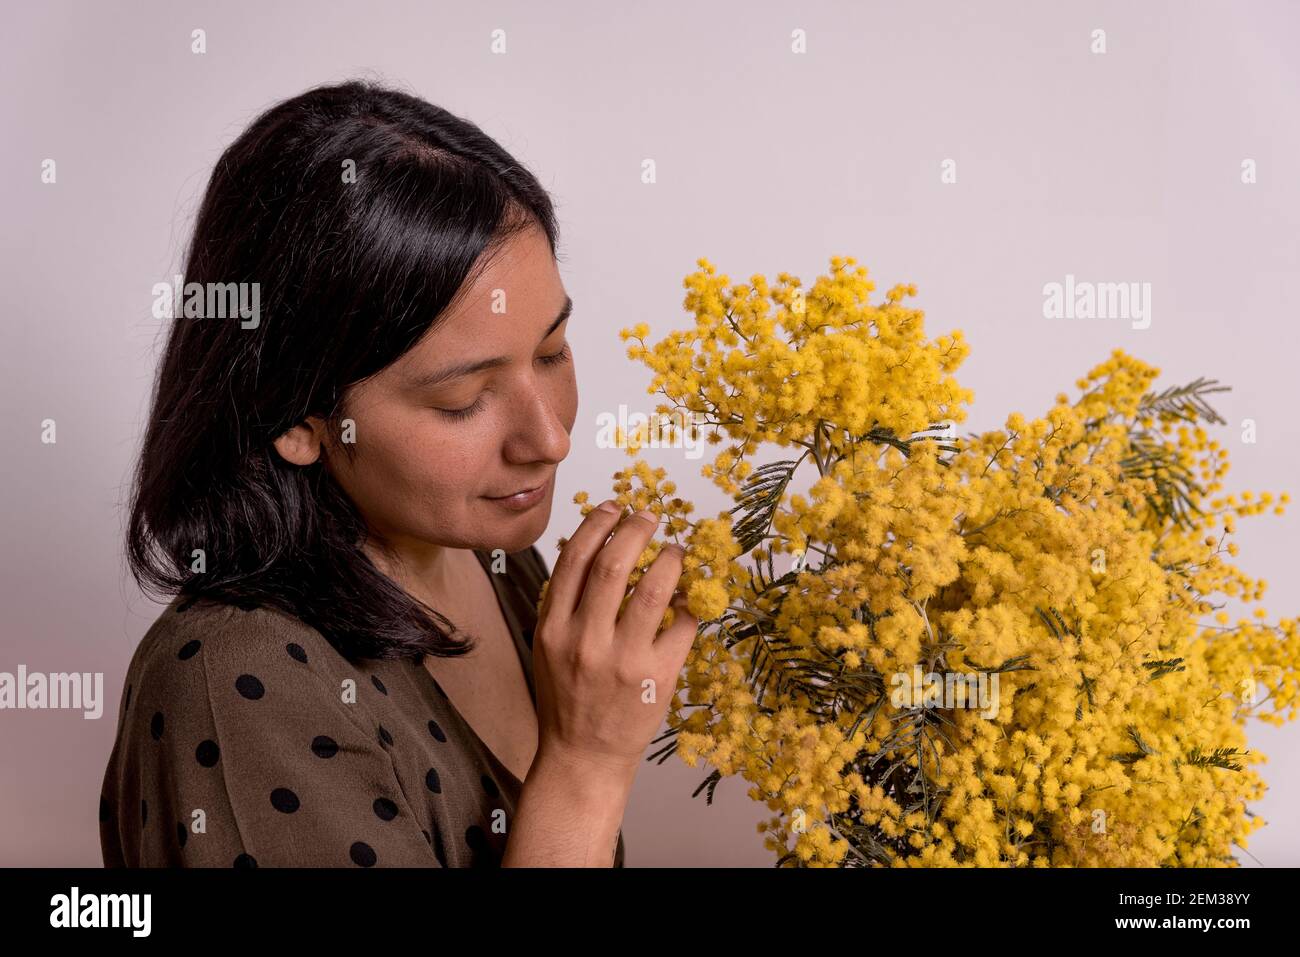 festa del giorno delle donne. ritratto di giovane donna che tocca mimosa fiori gialli bouquet su sfondo bianco con espressione rilassata del viso con clo casual Foto Stock